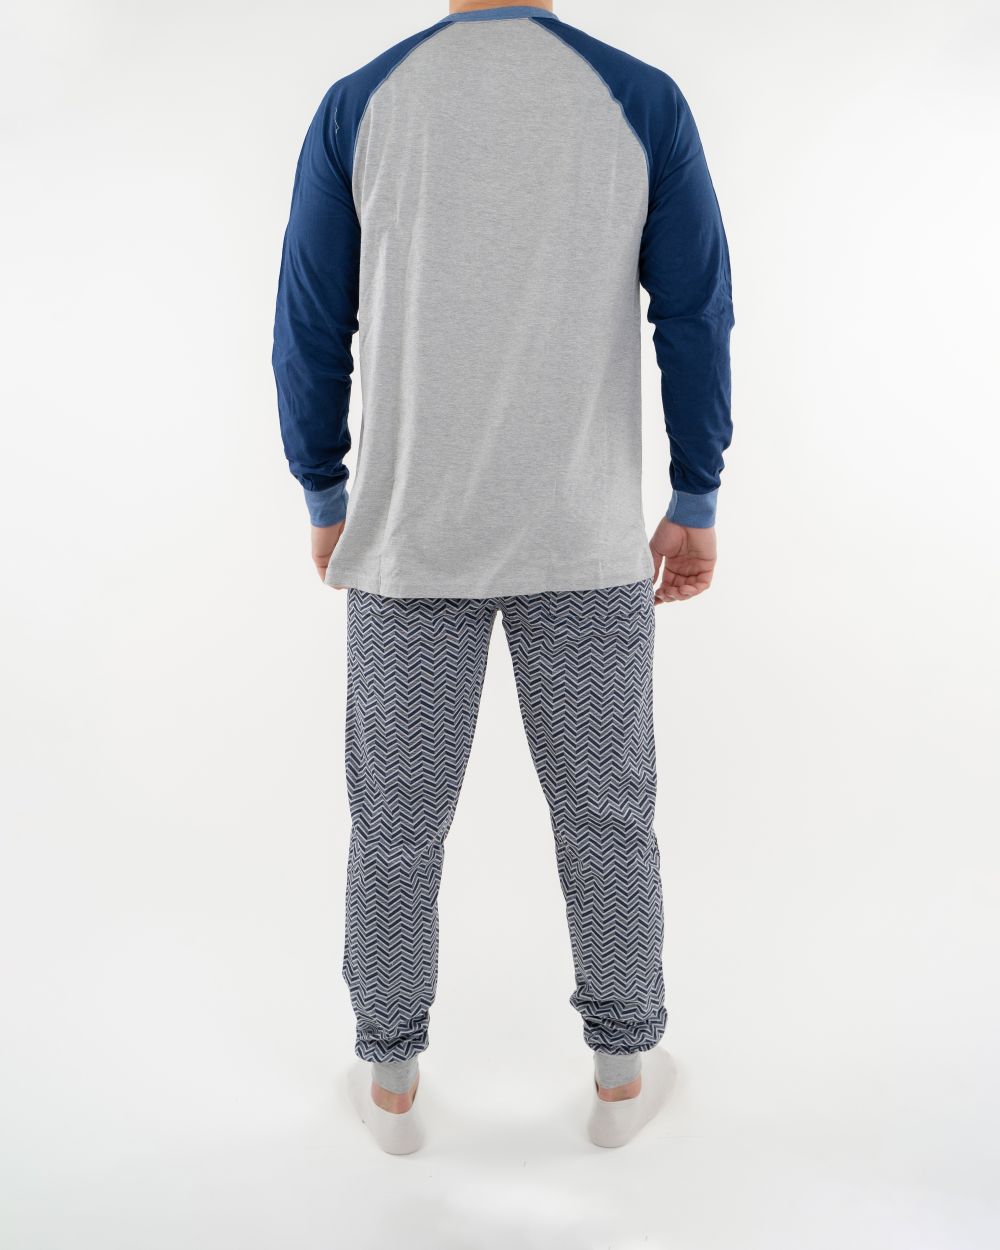 Navigare Intimo muška pidžama svetlo sive boje